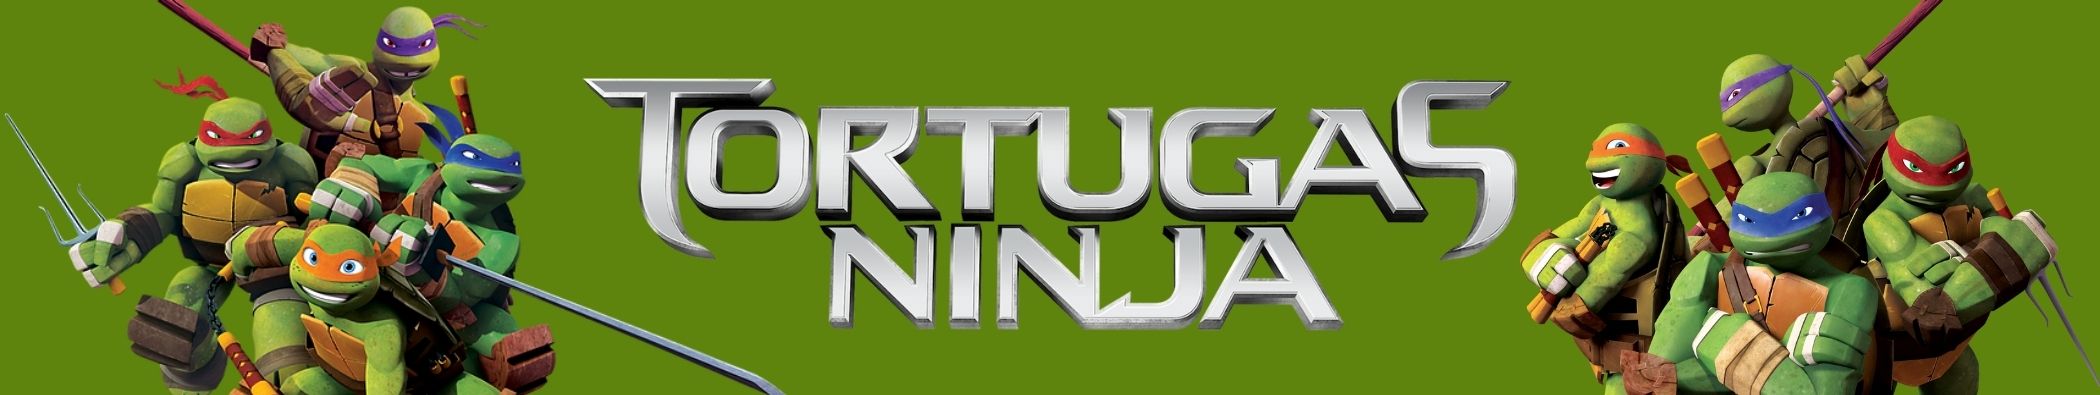 Joguines Tortugas Ninja